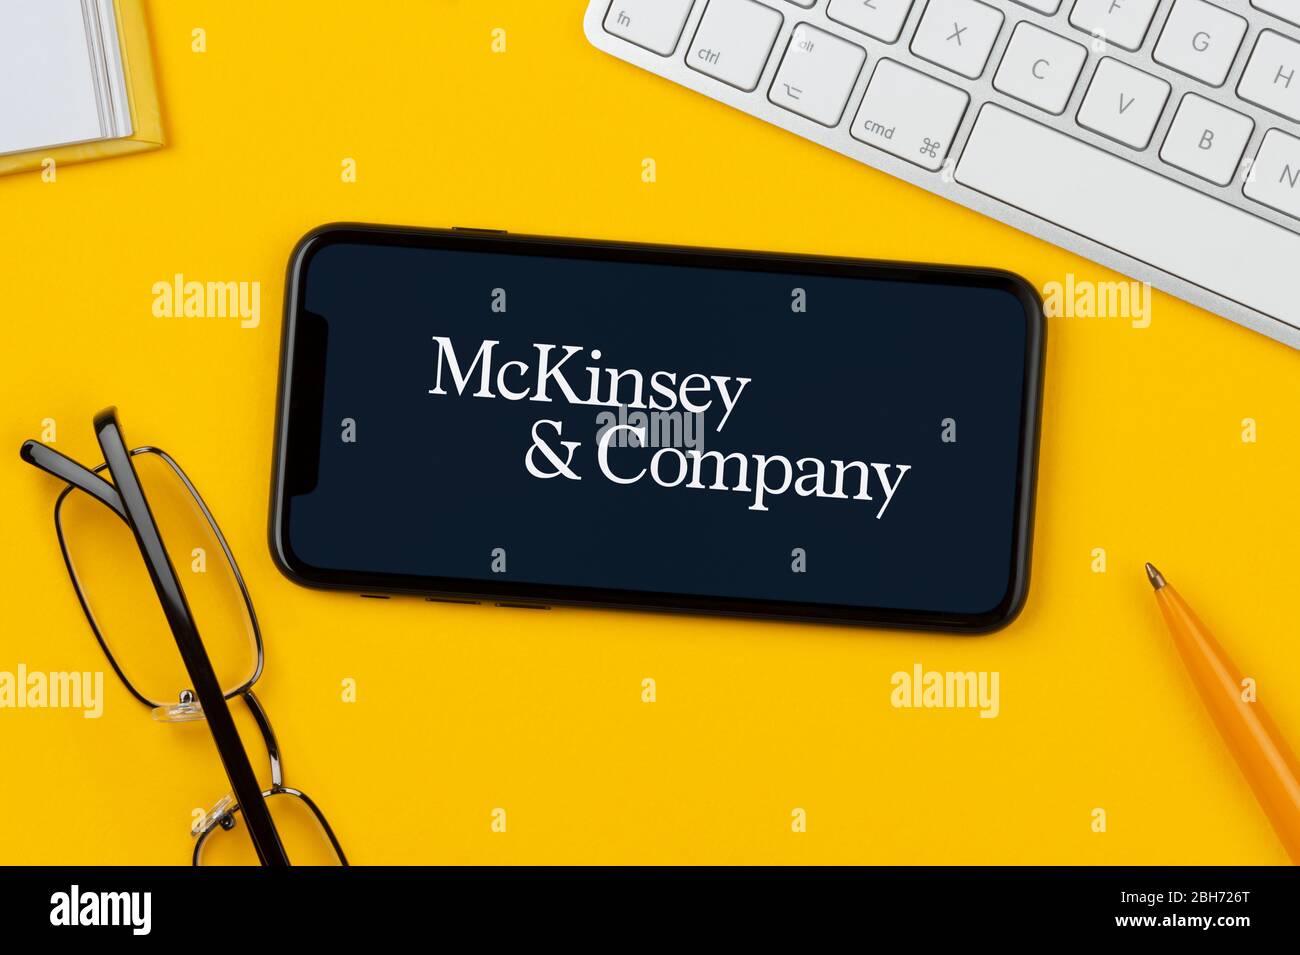 Uno smartphone con il logo McKinsey & Company si trova su uno sfondo giallo, insieme a tastiera, occhiali, penna e libro (solo per uso editoriale). Foto Stock